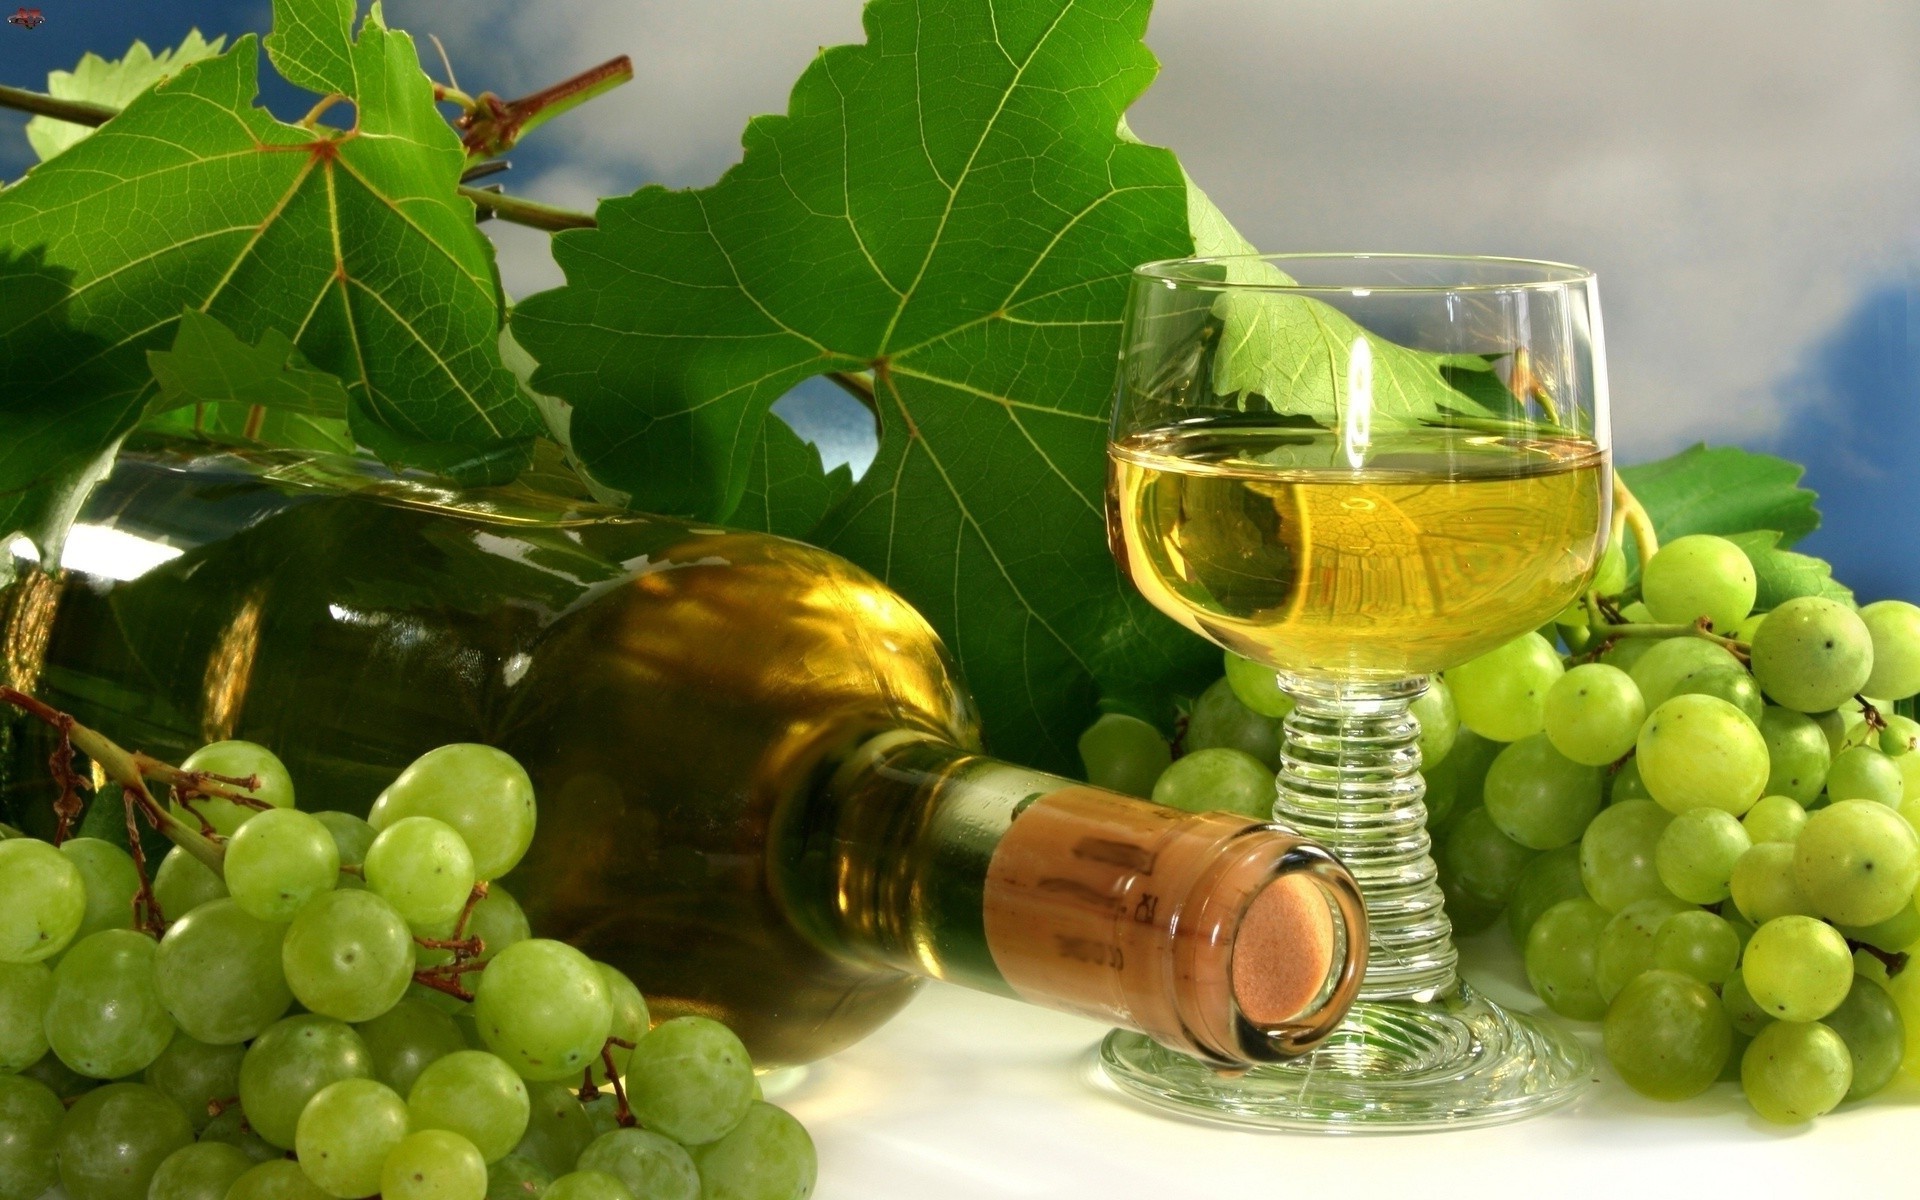 сок вина виноград вайн бутылка винзавод стекло пить фрукты алкоголь виноградник грейпвайн еда лист виноградарство пастбище здоровый здоровья кластер натюрморт